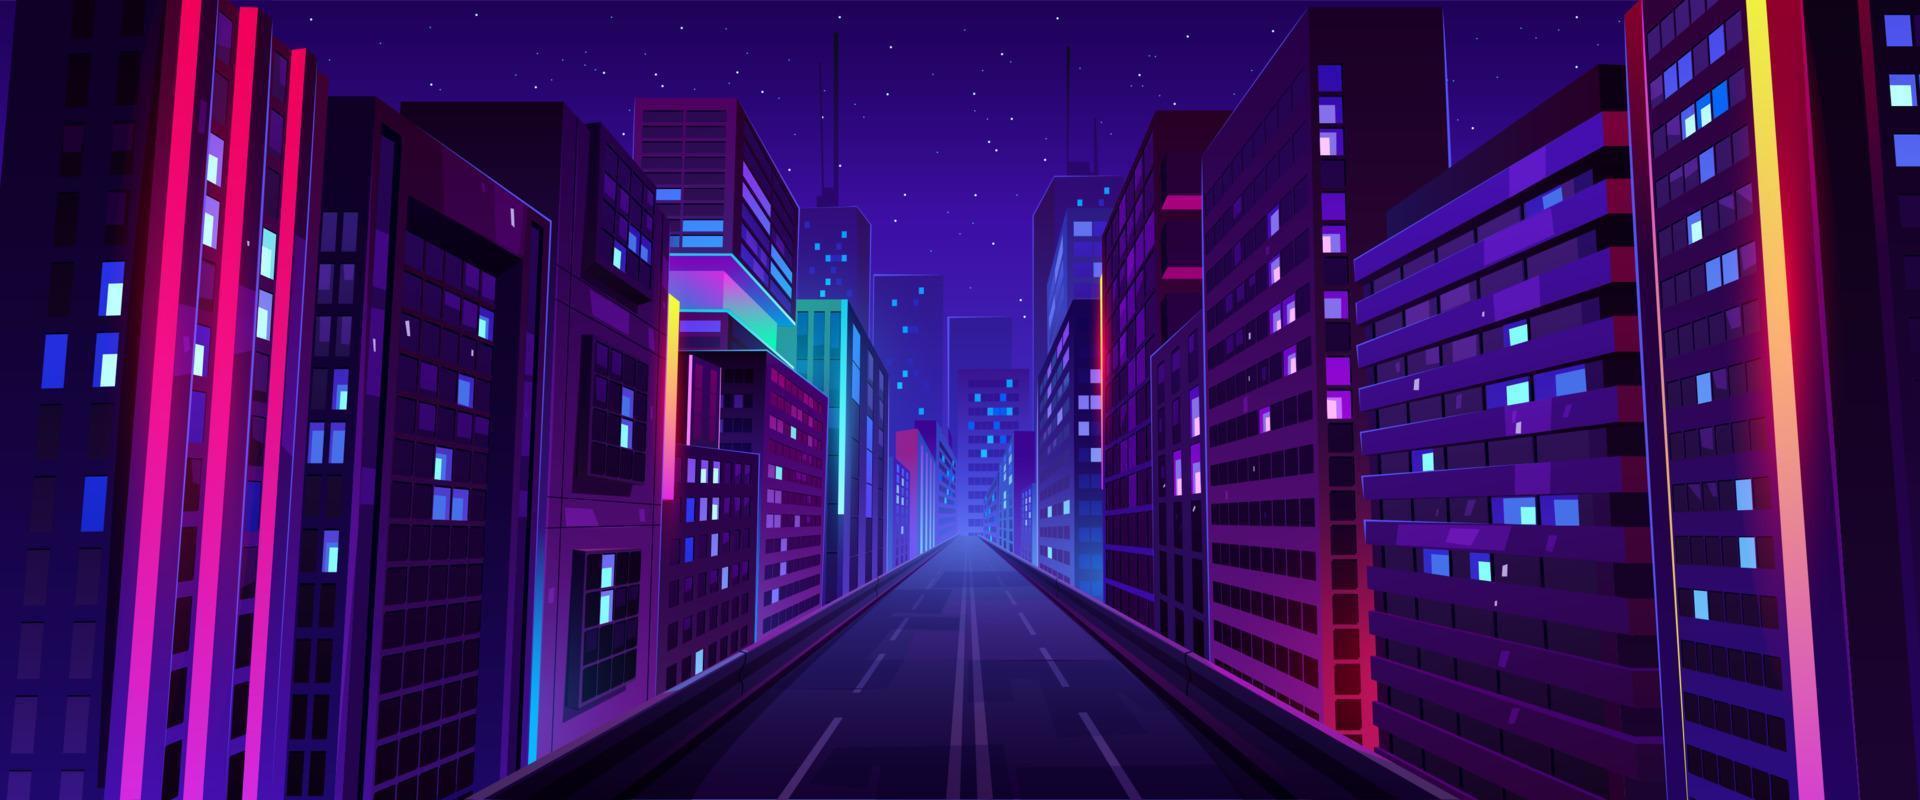 calle nocturna de la ciudad, carretera y casas con luz de neón vector